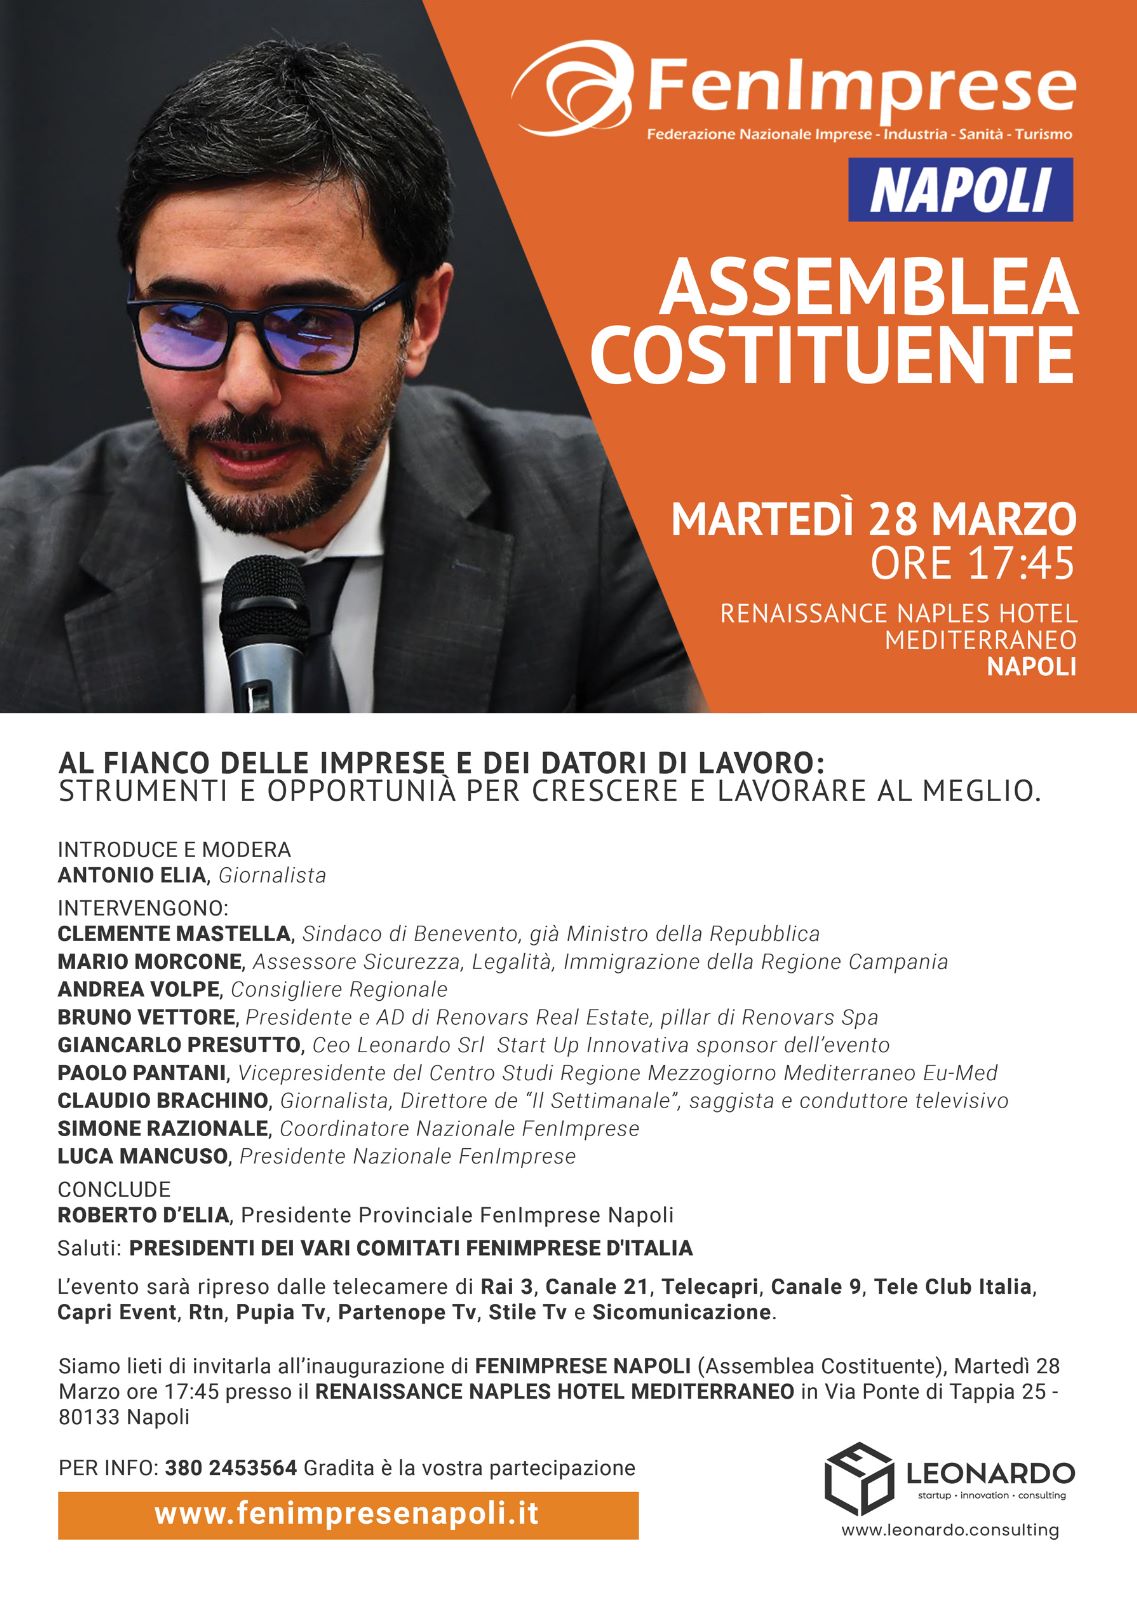 Napoli: FenImprese, attesa per Assemblea costituente  